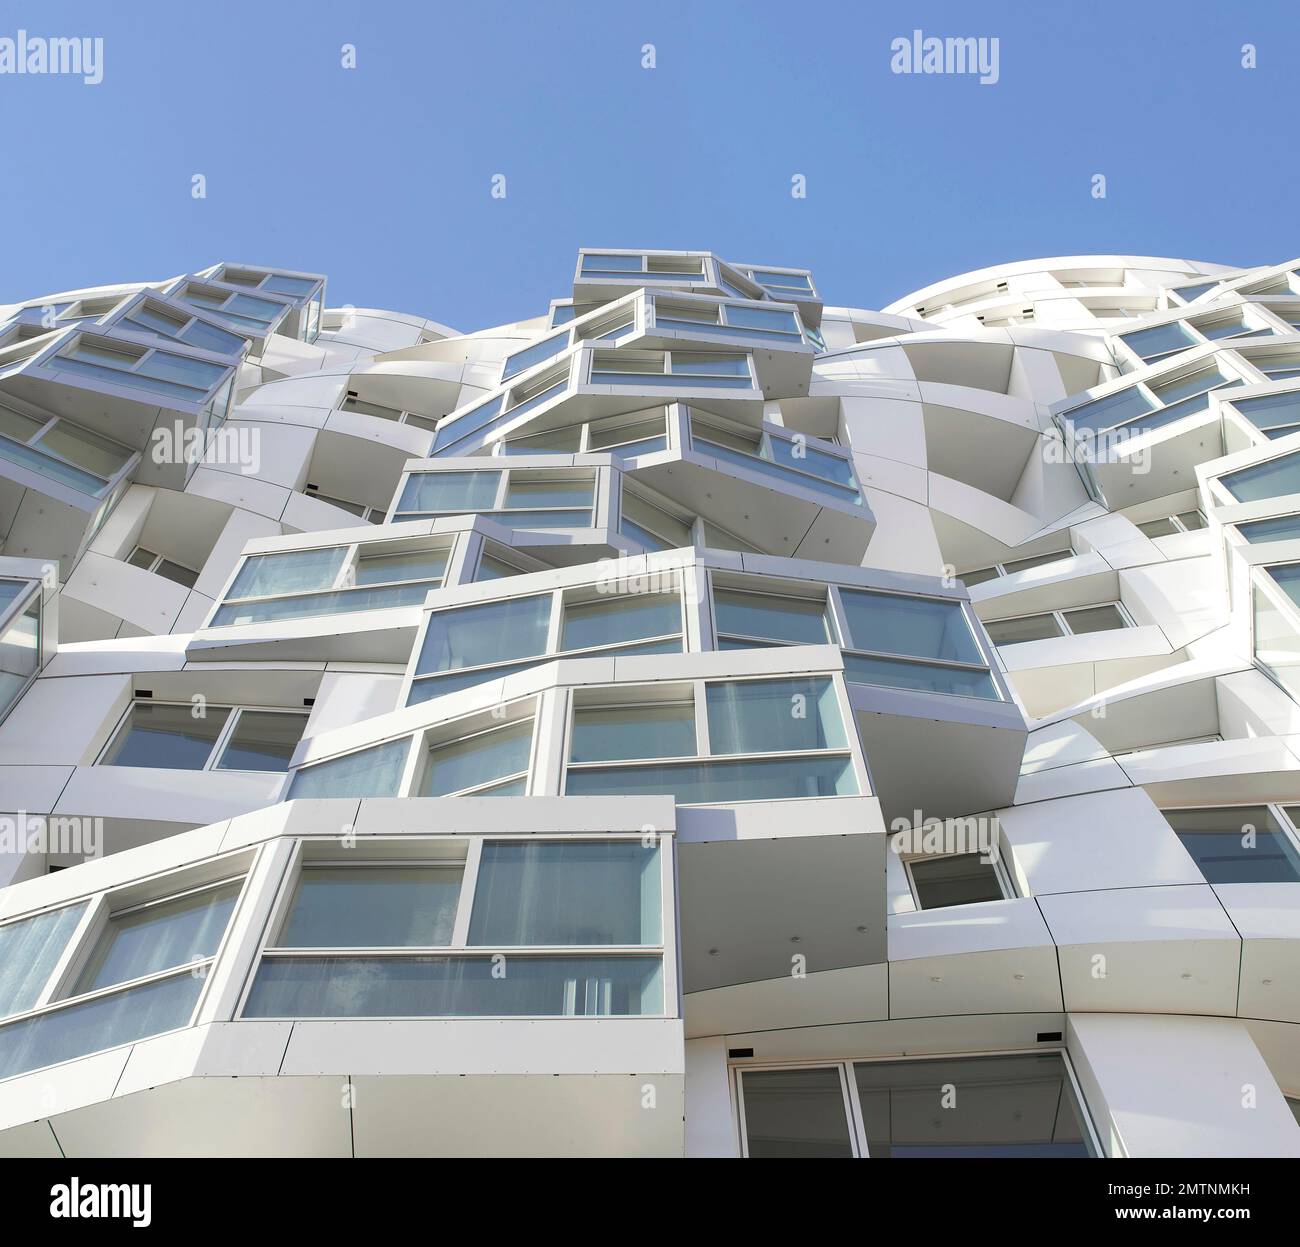 Vue panoramique sur une façade blanche et ondulée. Prospect place Battersea Power Station Frank Gehry, Londres, Royaume-Uni. Architecte: Frank Gehry, 2022 Banque D'Images